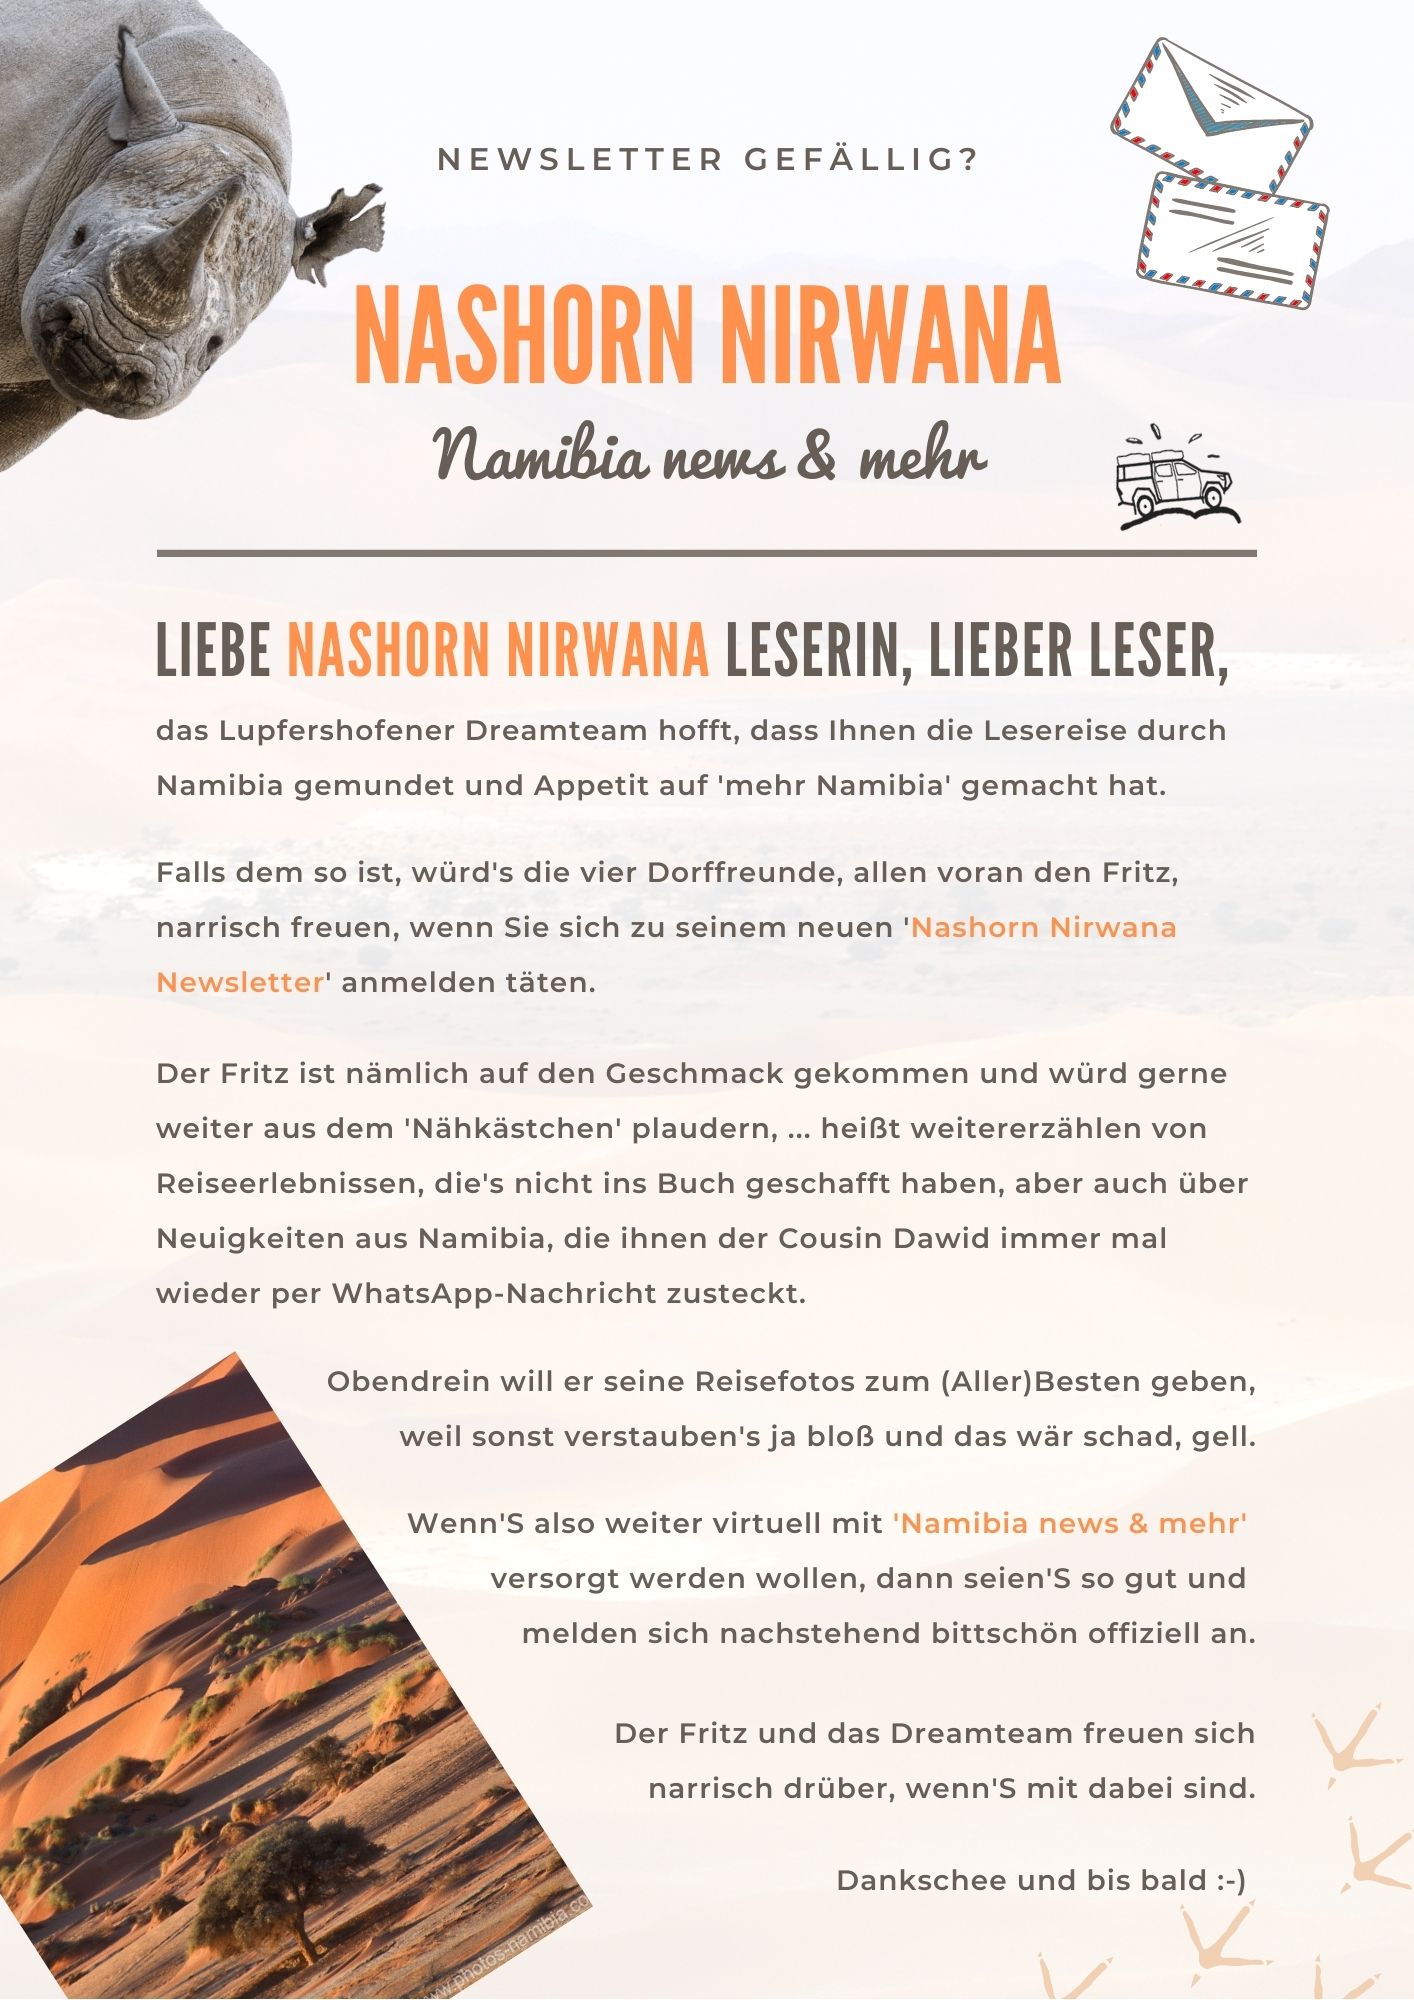 Wichtige Nachricht von Nashorn Nirwana